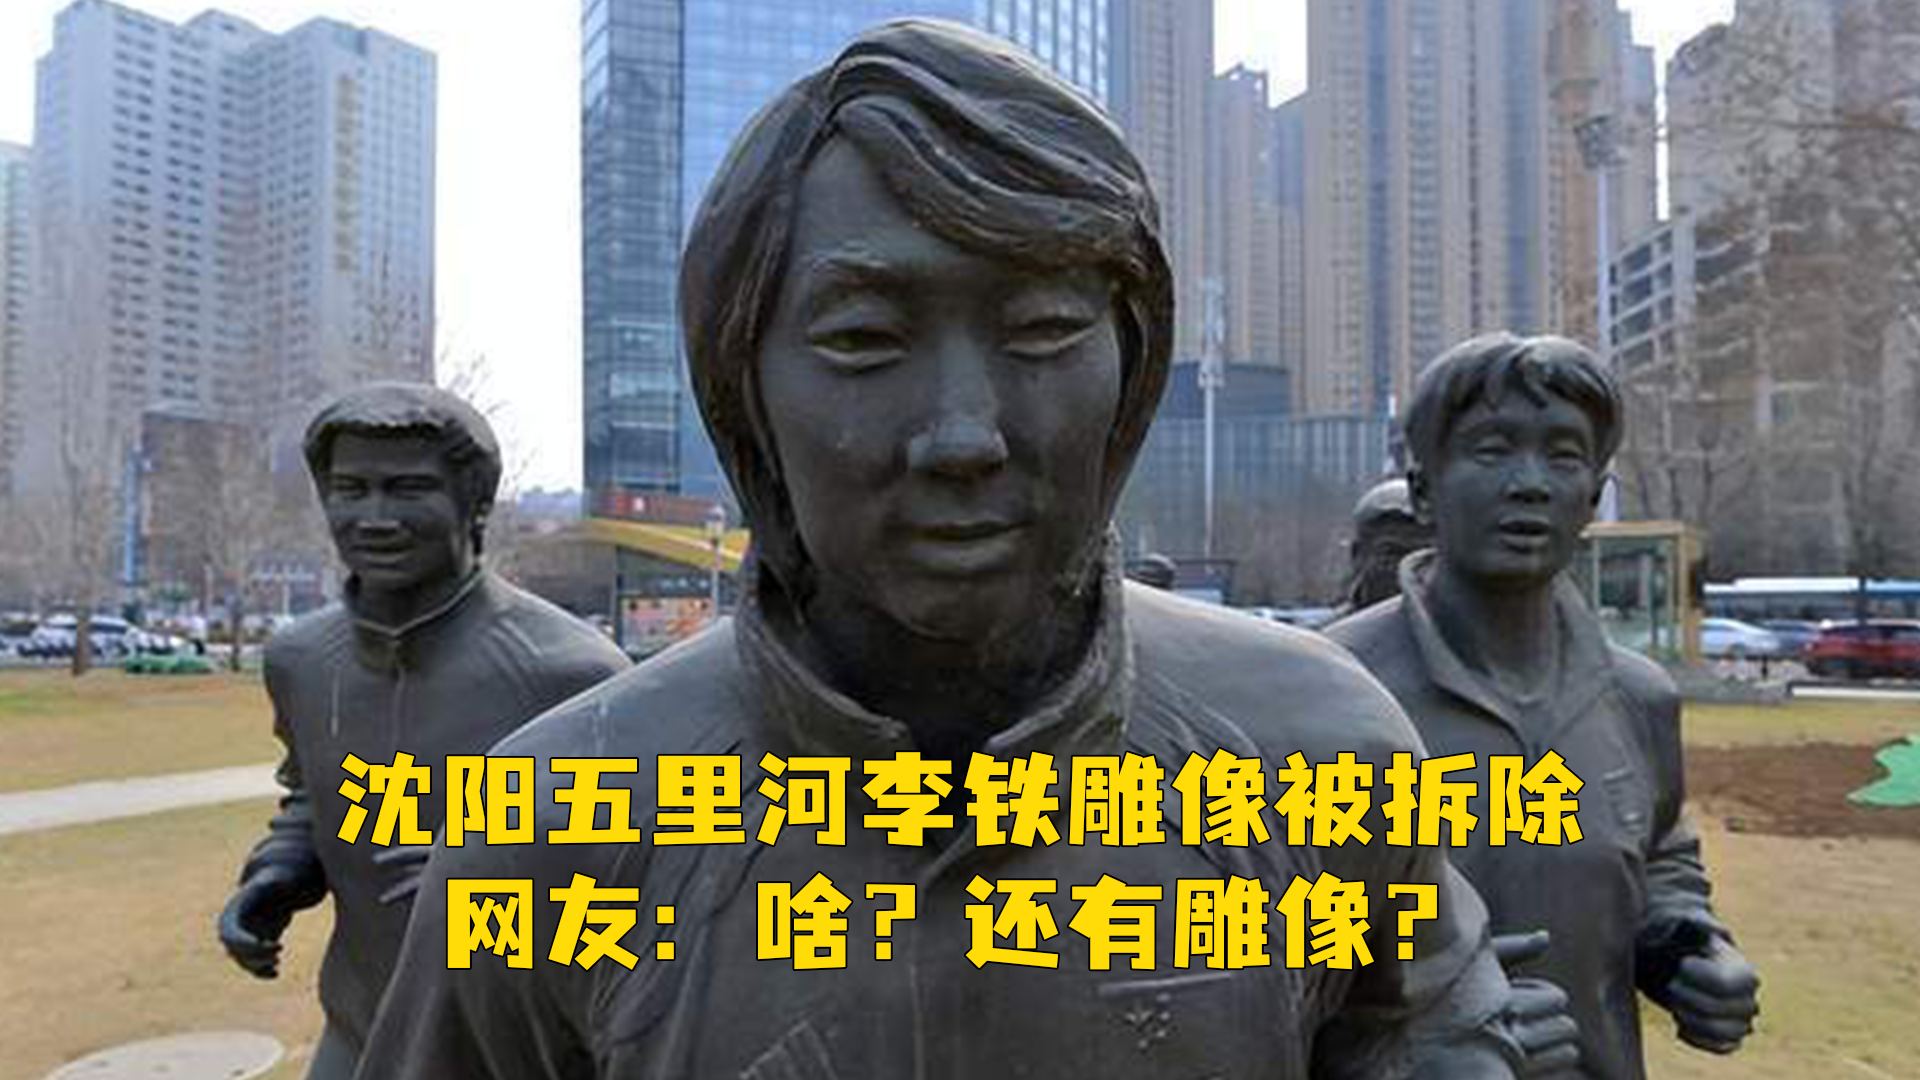 沈阳五里河李铁雕像被拆除,网友:啥?还有雕像?